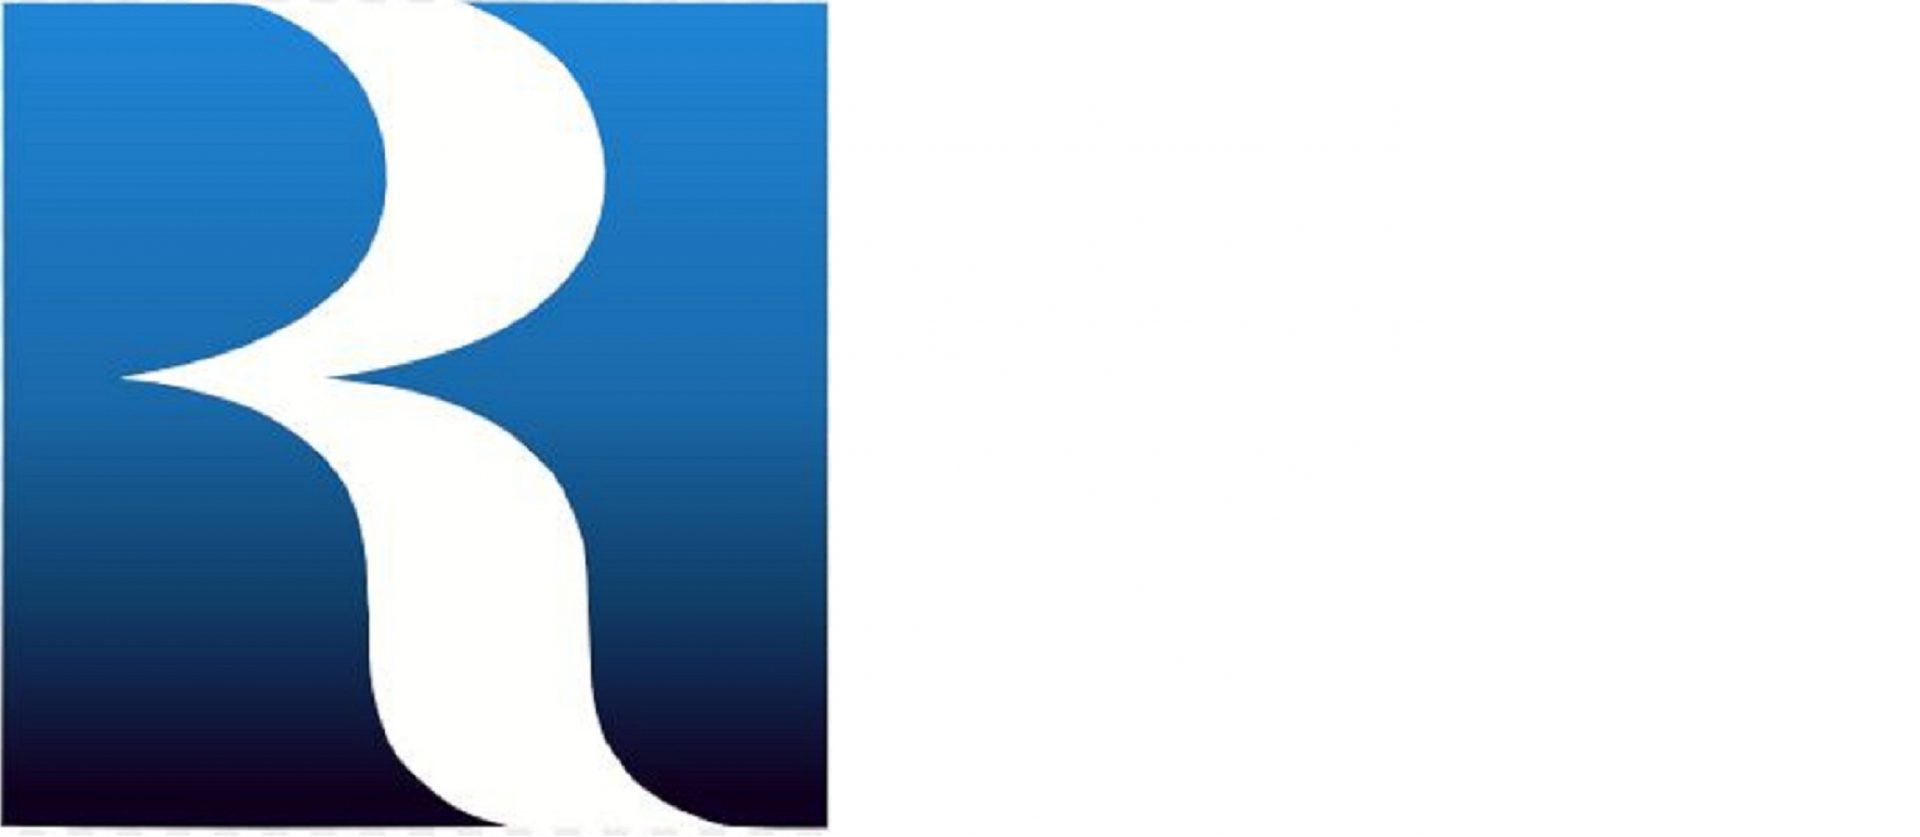 Range Resources corporate logo